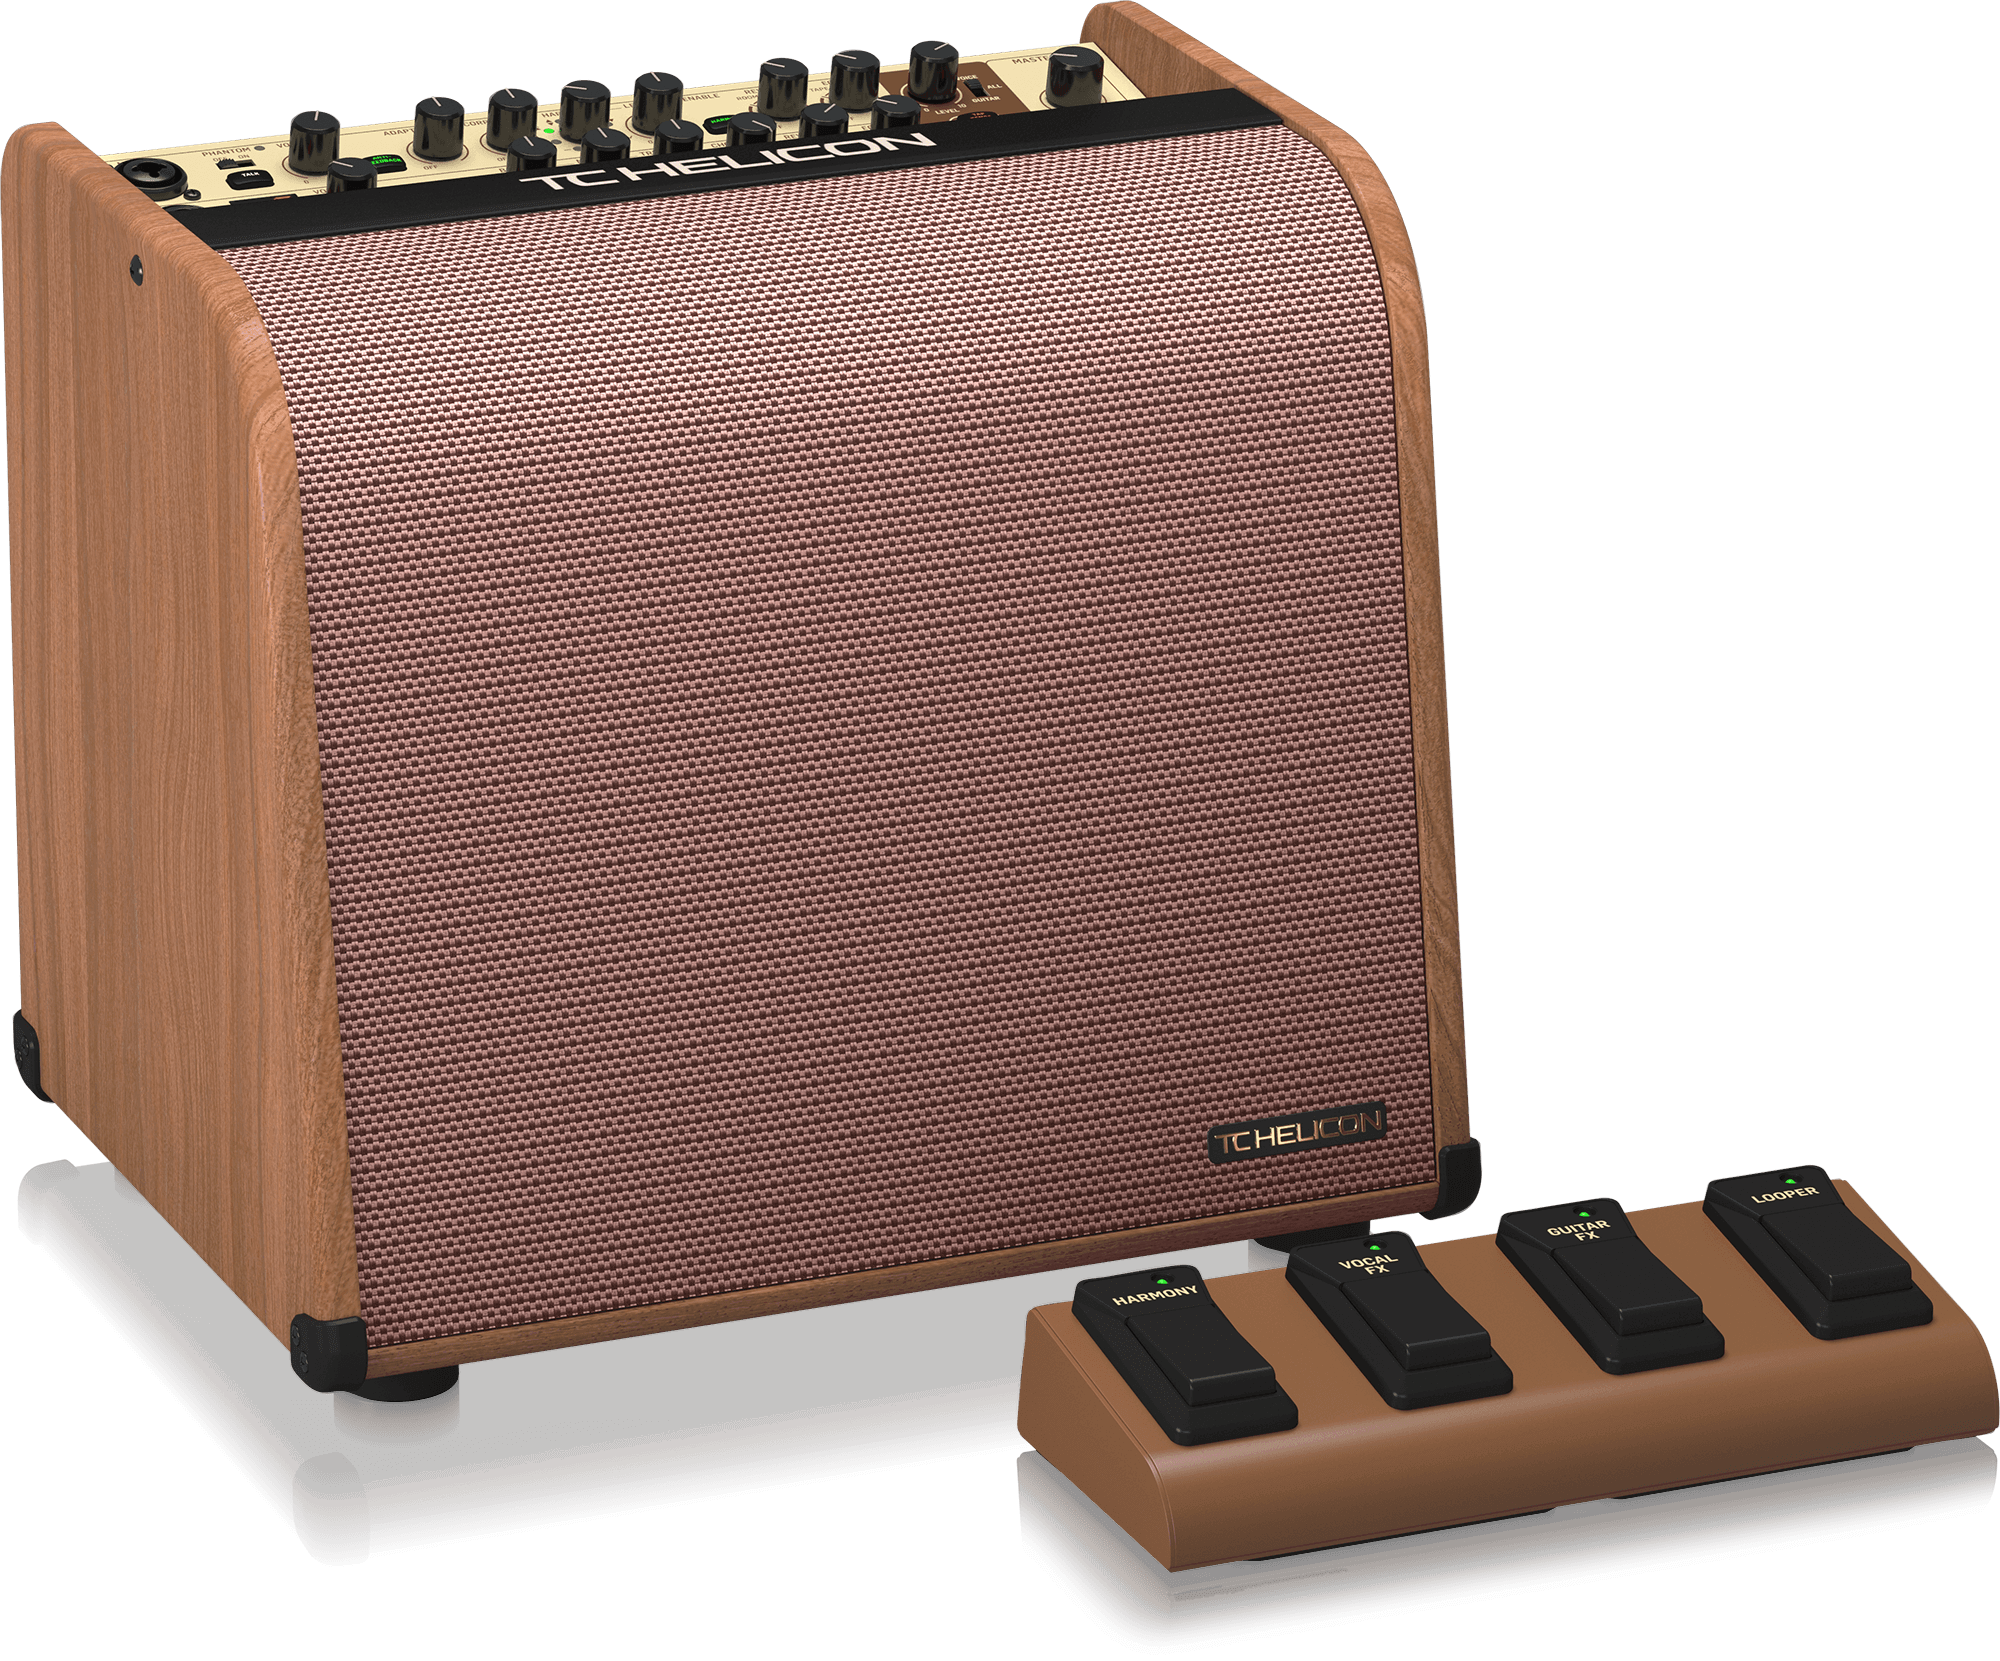 TC HELICON HARMONY V60 - 2-х канальный комбоусилитель для акустической гитары/вокала, 60 Вт купить в prostore.me